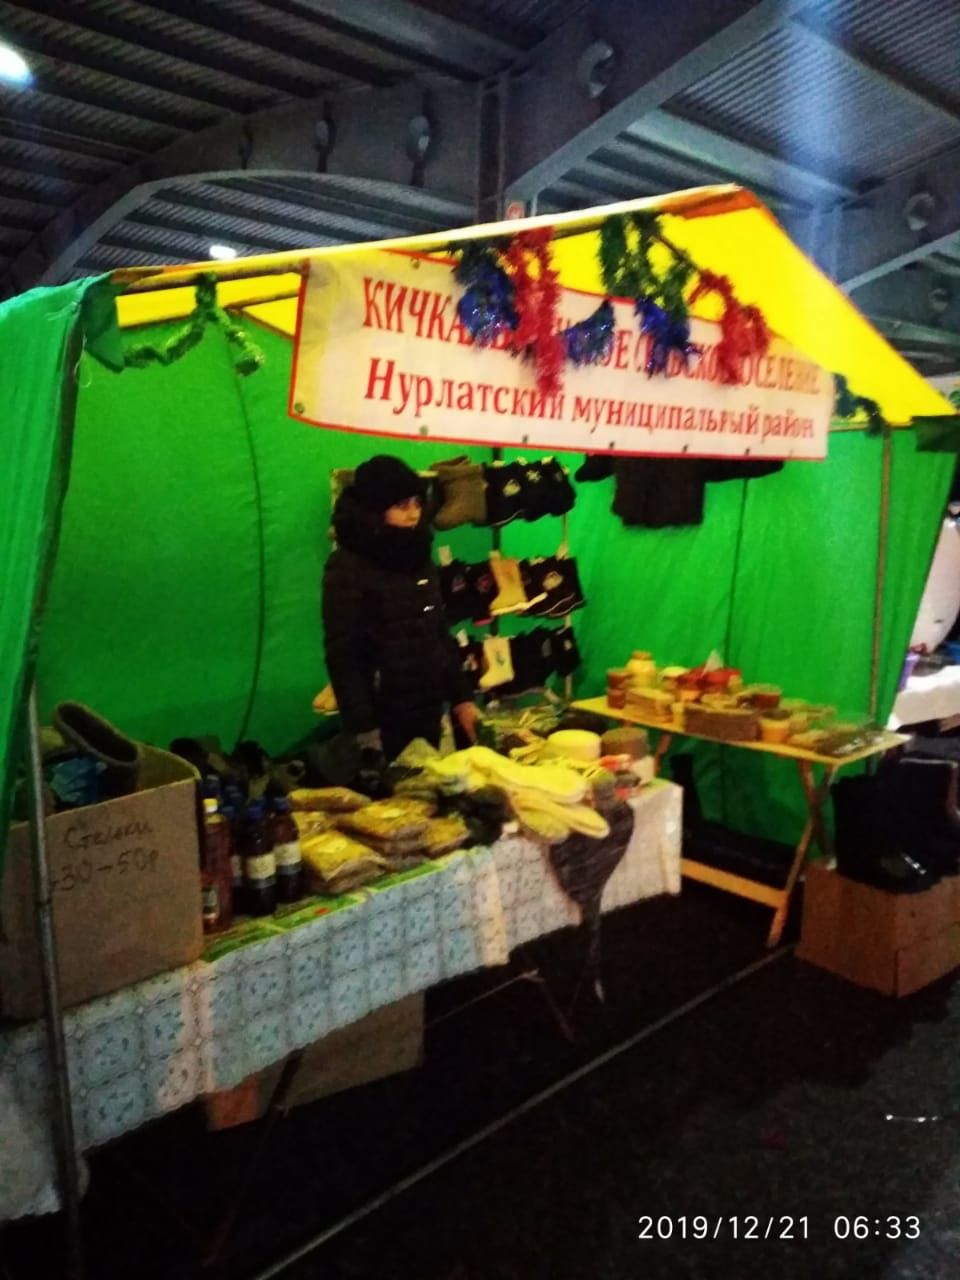 Нурлатцы участвуют  в предновогодней сельскохозяйственной ярмарке в Казани